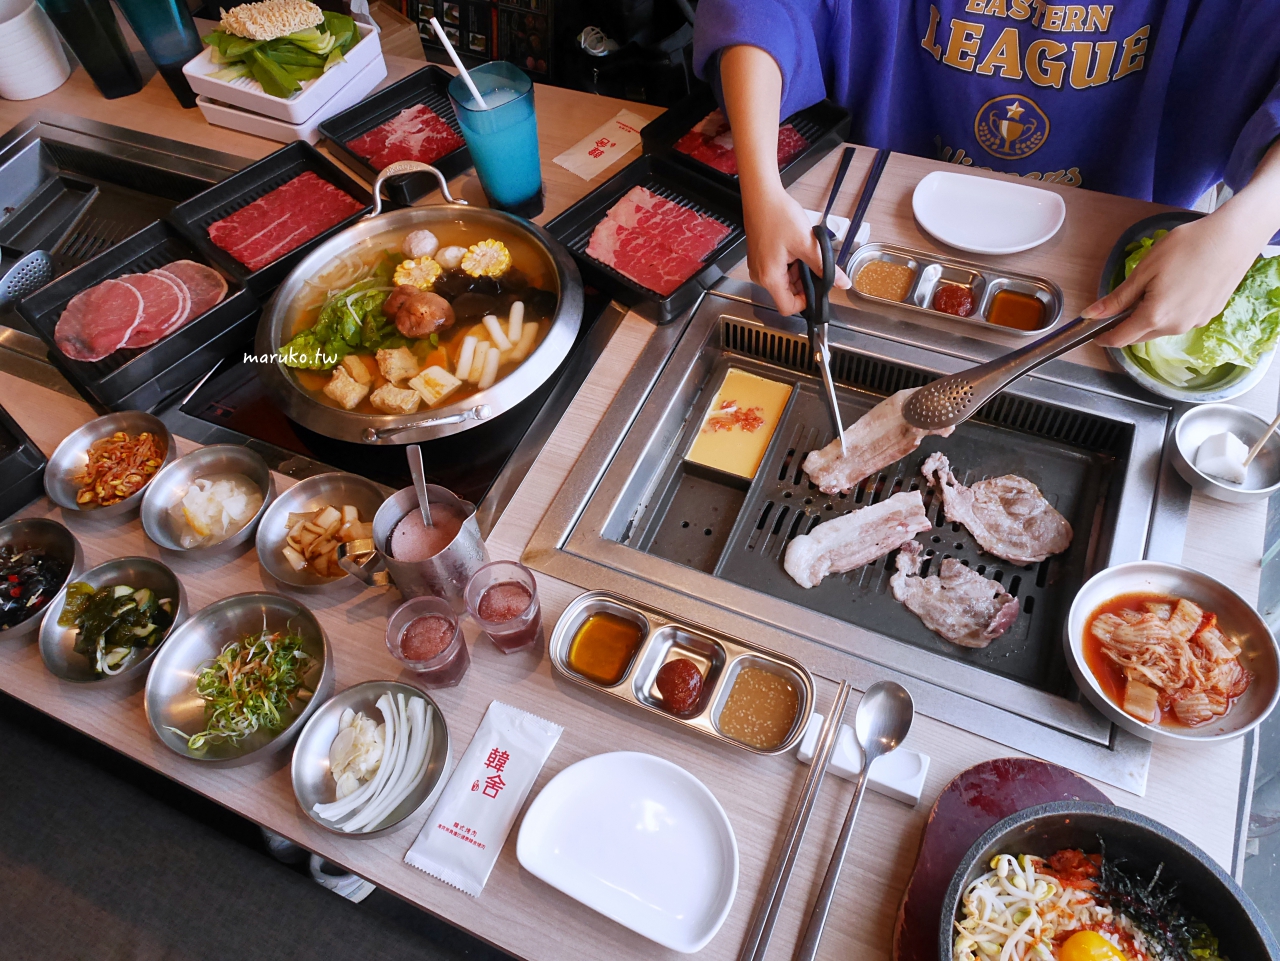 【桃園】韓舍韓式烤肉吃到飽,安格斯牛,無限小菜,石鍋拌飯任你吃 清爽無負擔韓式烤肉